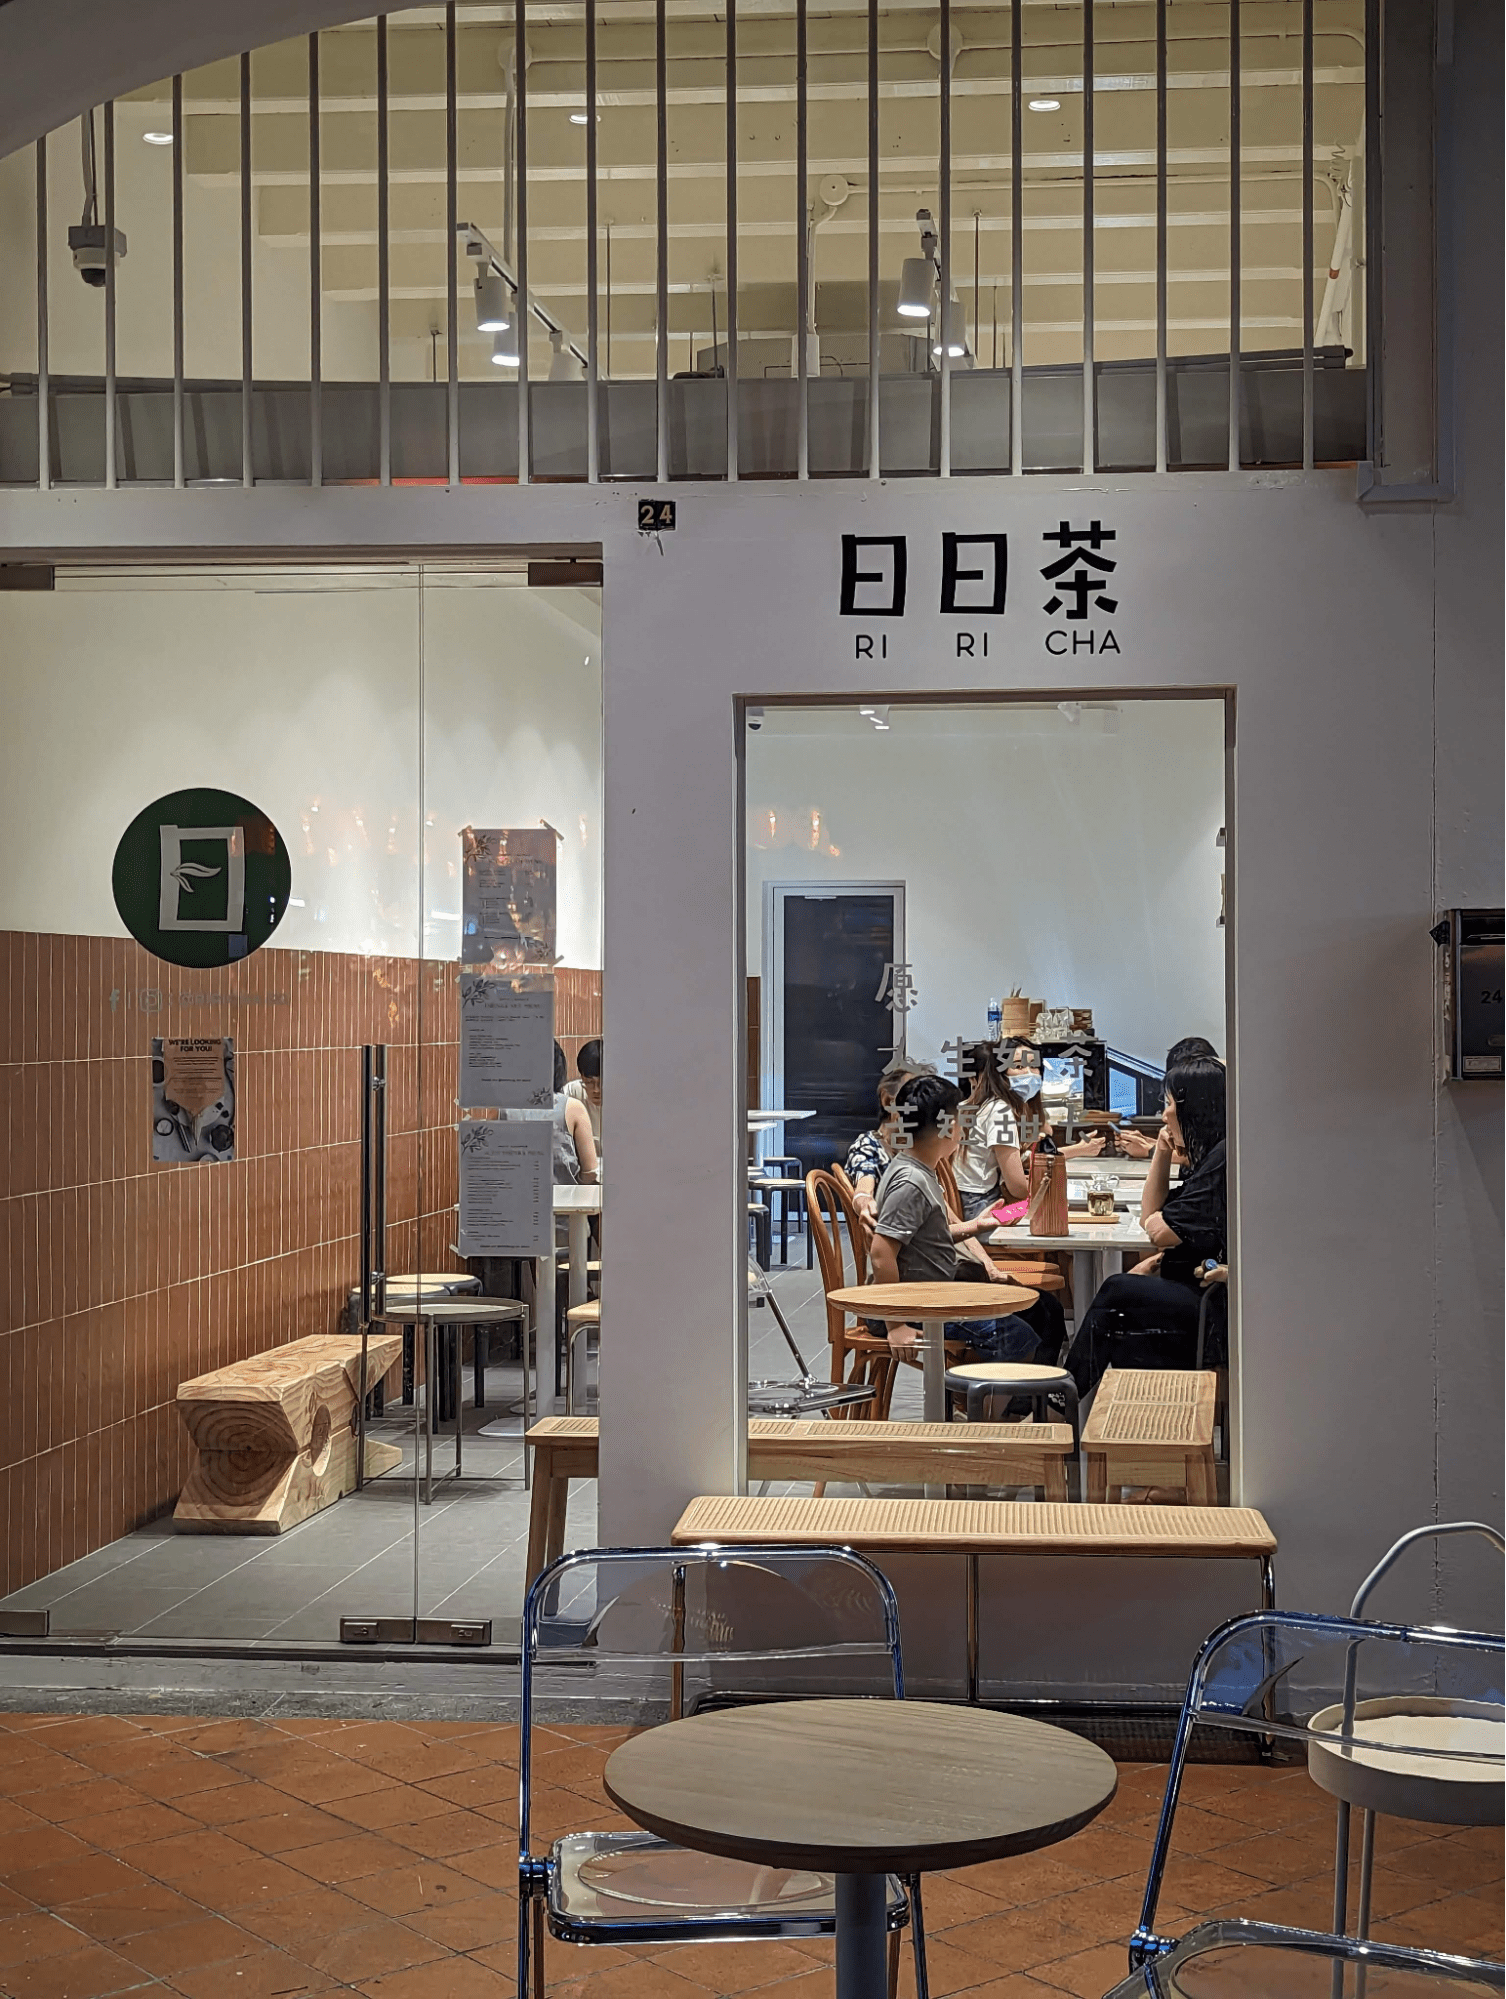 new restaurants february - Ri Ri Cha storefront